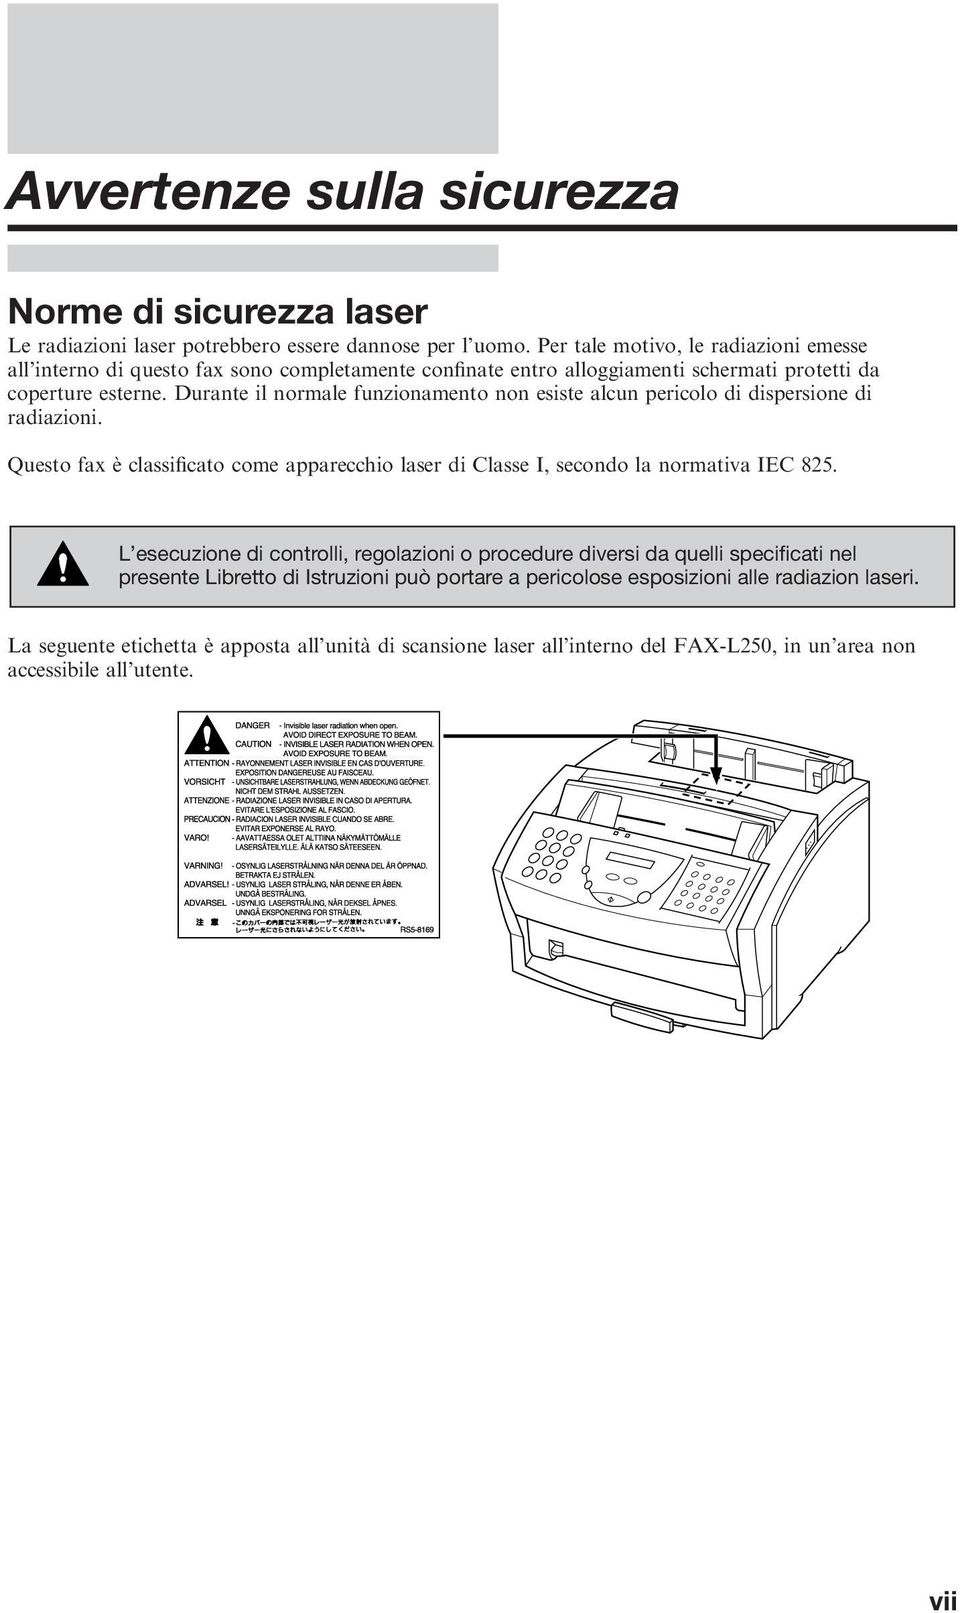 Durante il normale funzionamento non esiste alcun pericolo di dispersione di radiazioni. Questo fax è classificato come apparecchio laser di Classe I, secondo la normativa IEC 825.